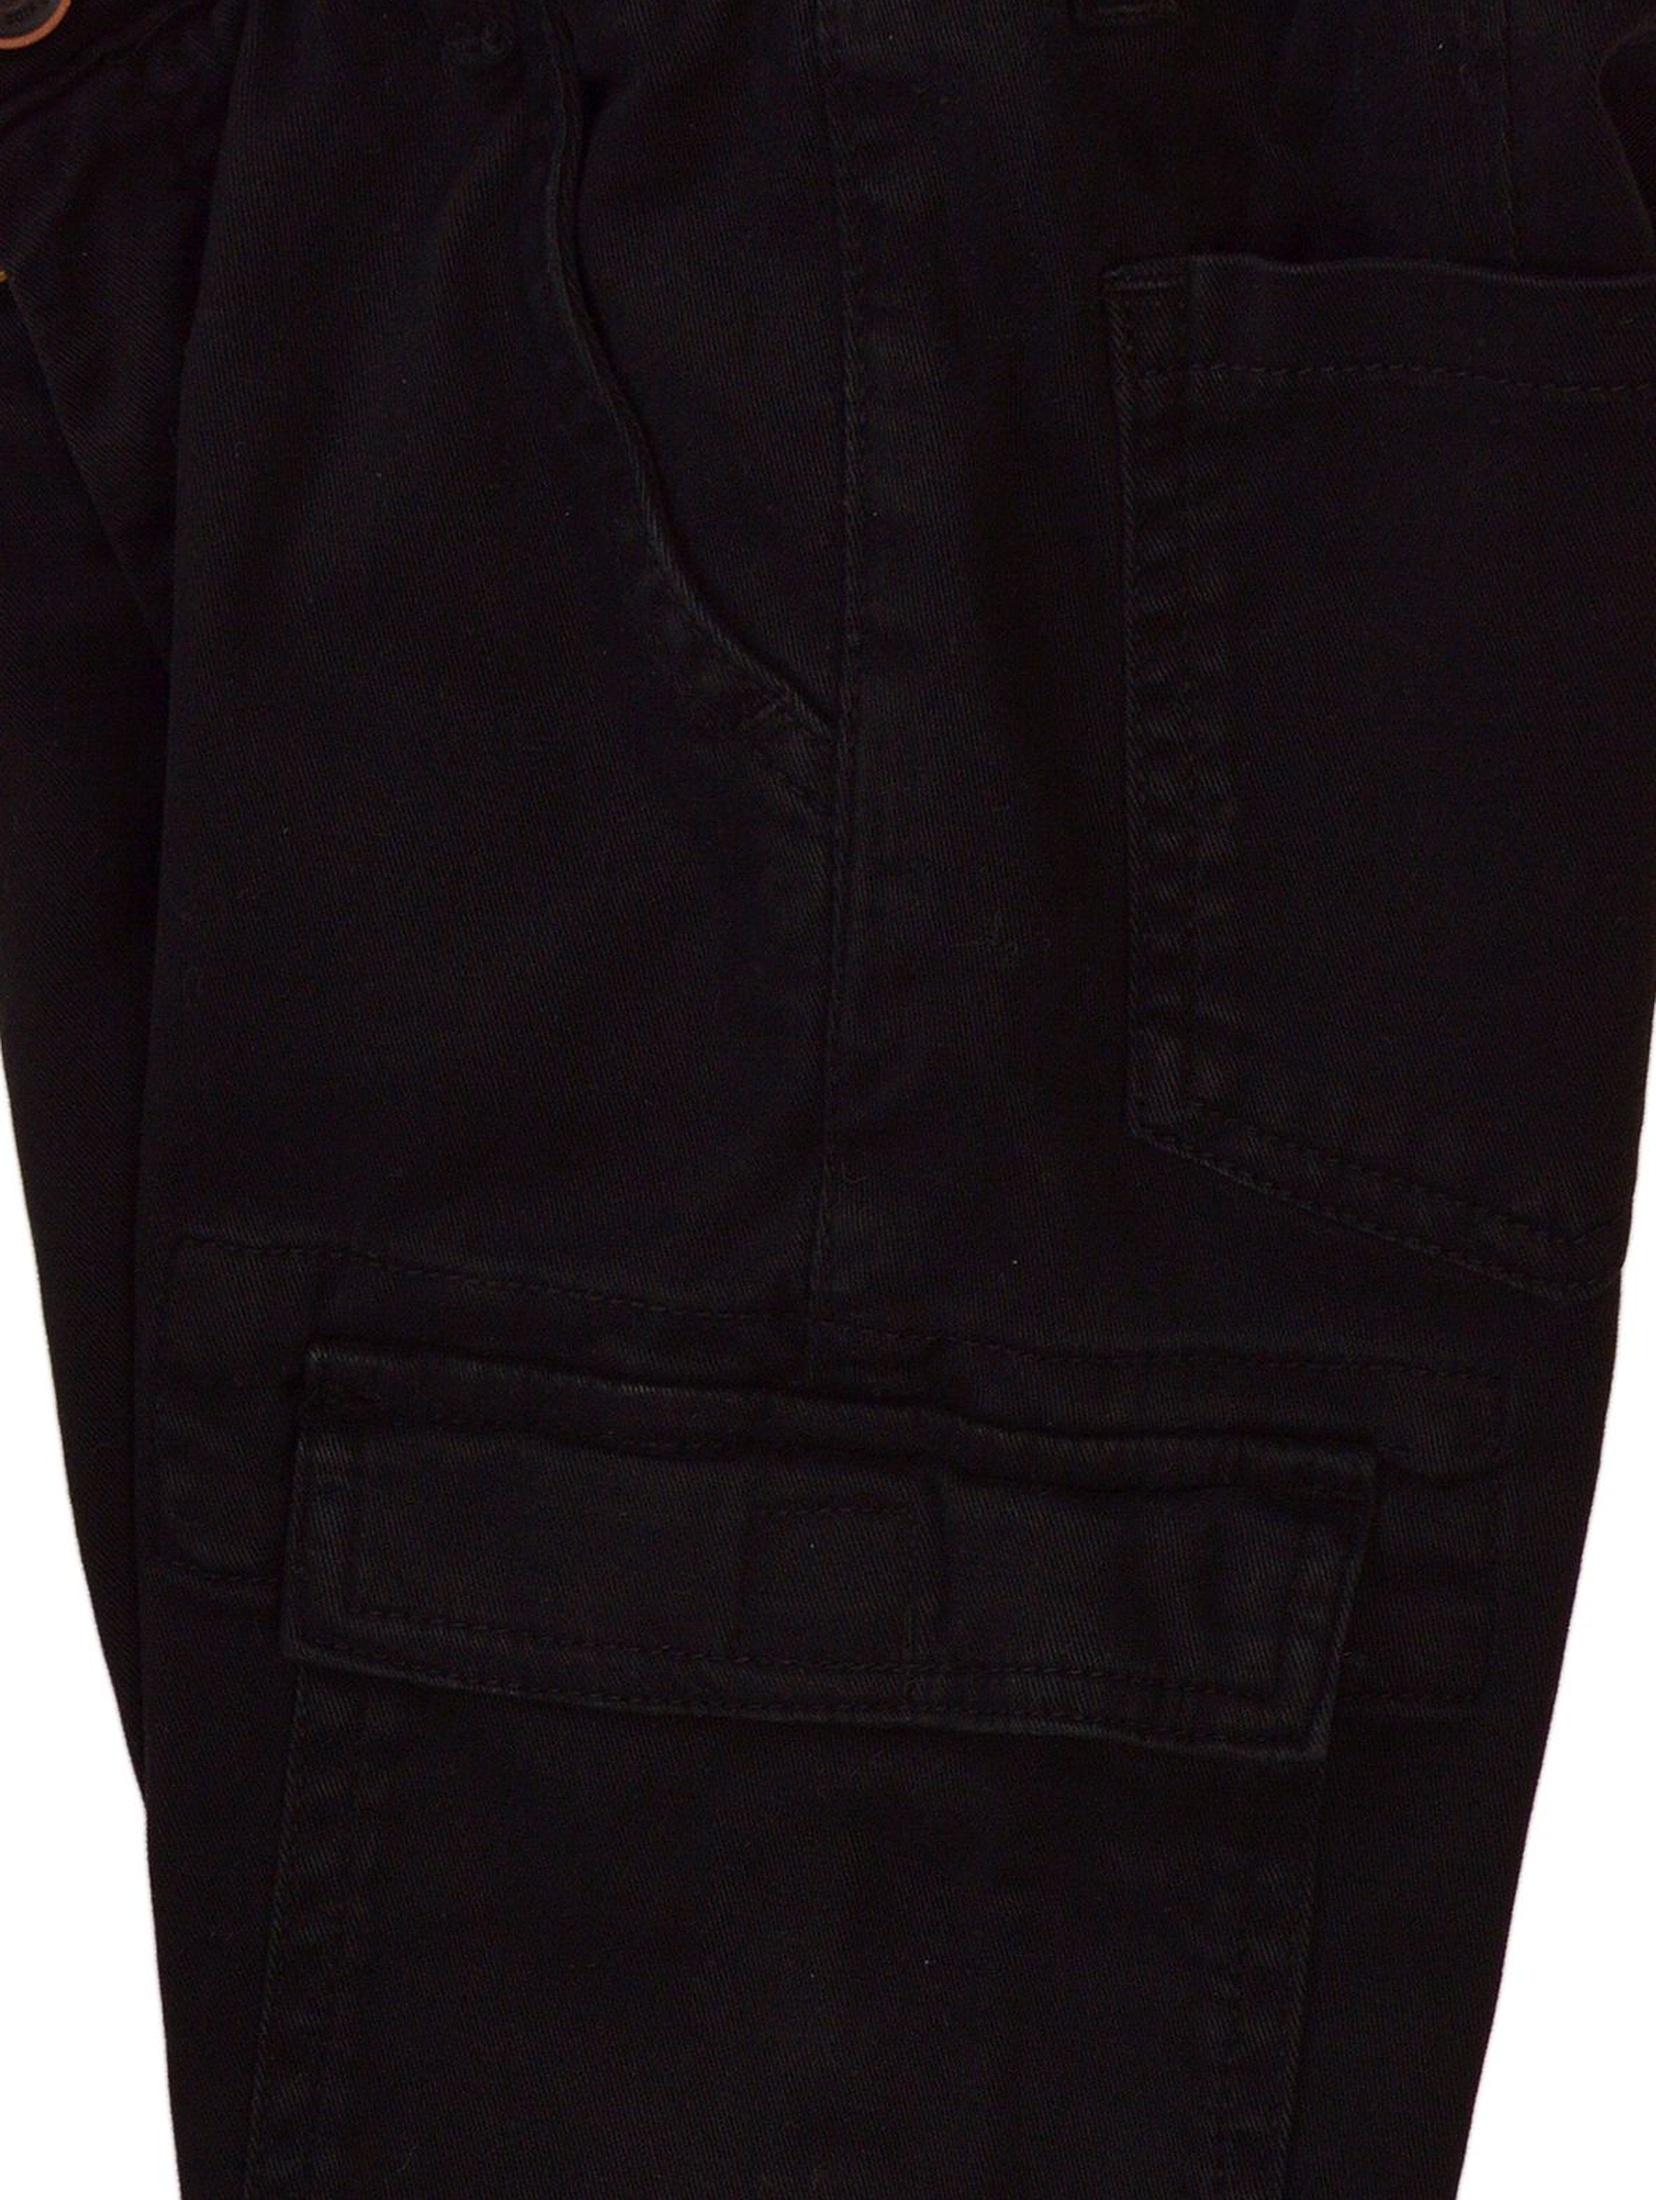 Spodnie chłopięce typu bojówki czarne